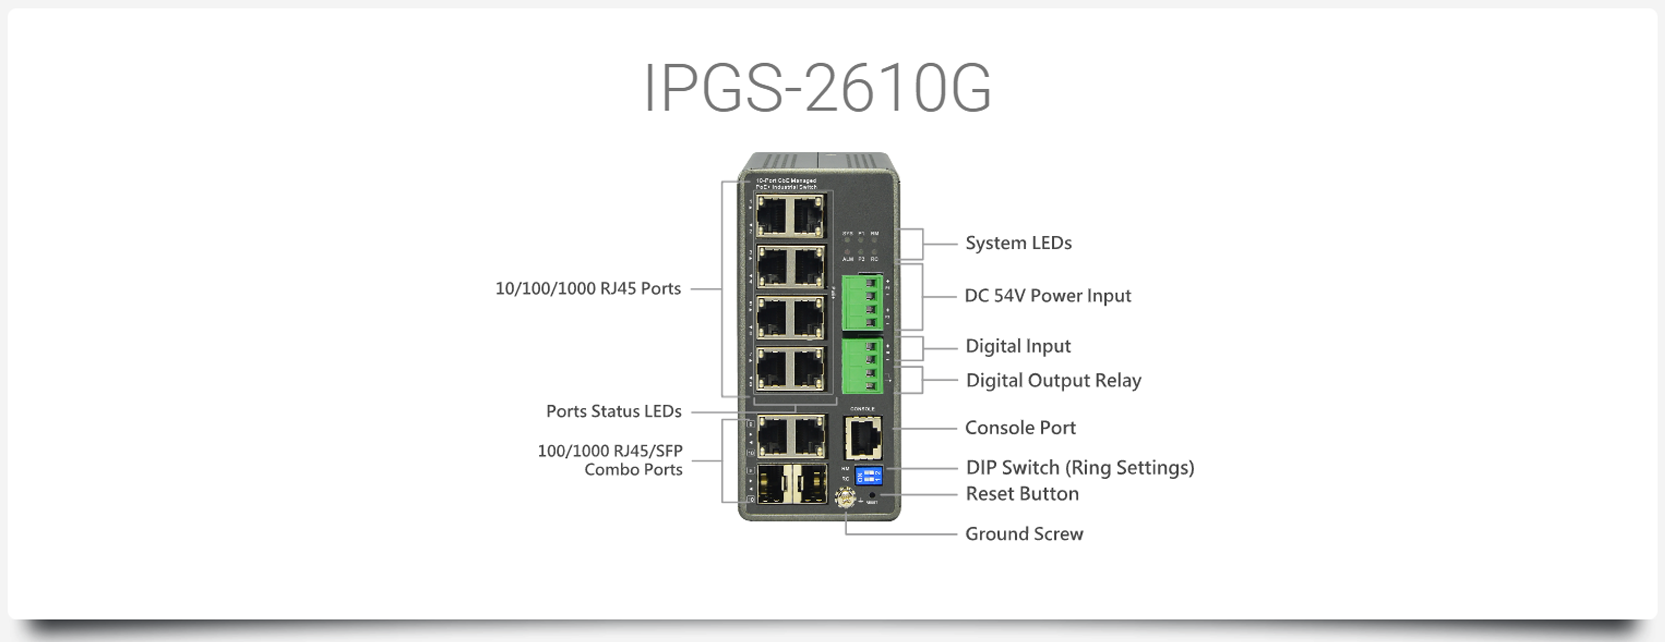 IPGS-2610G